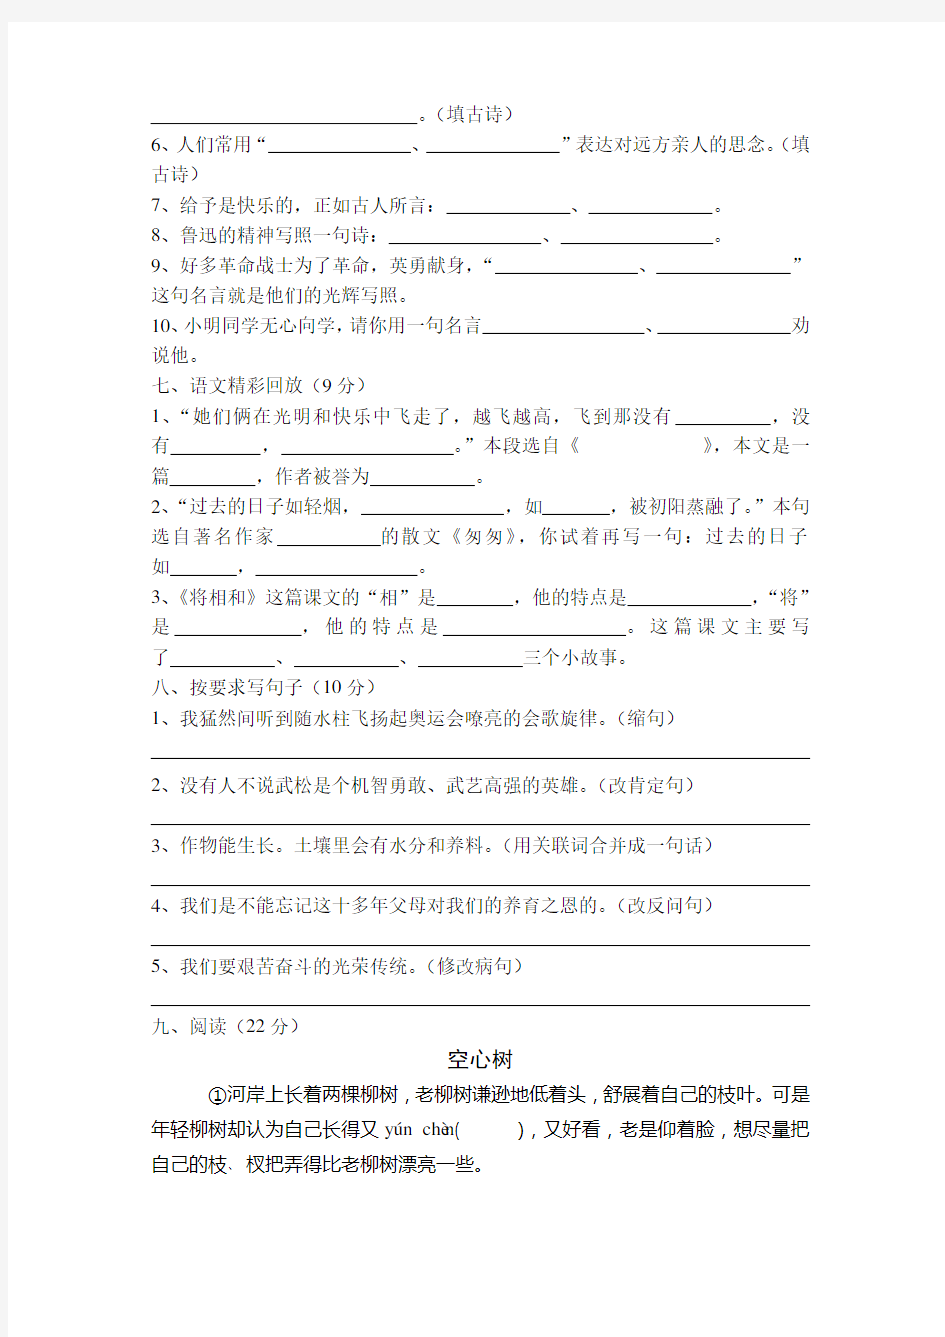 上海市小学六年级语文毕业考试试卷及答案